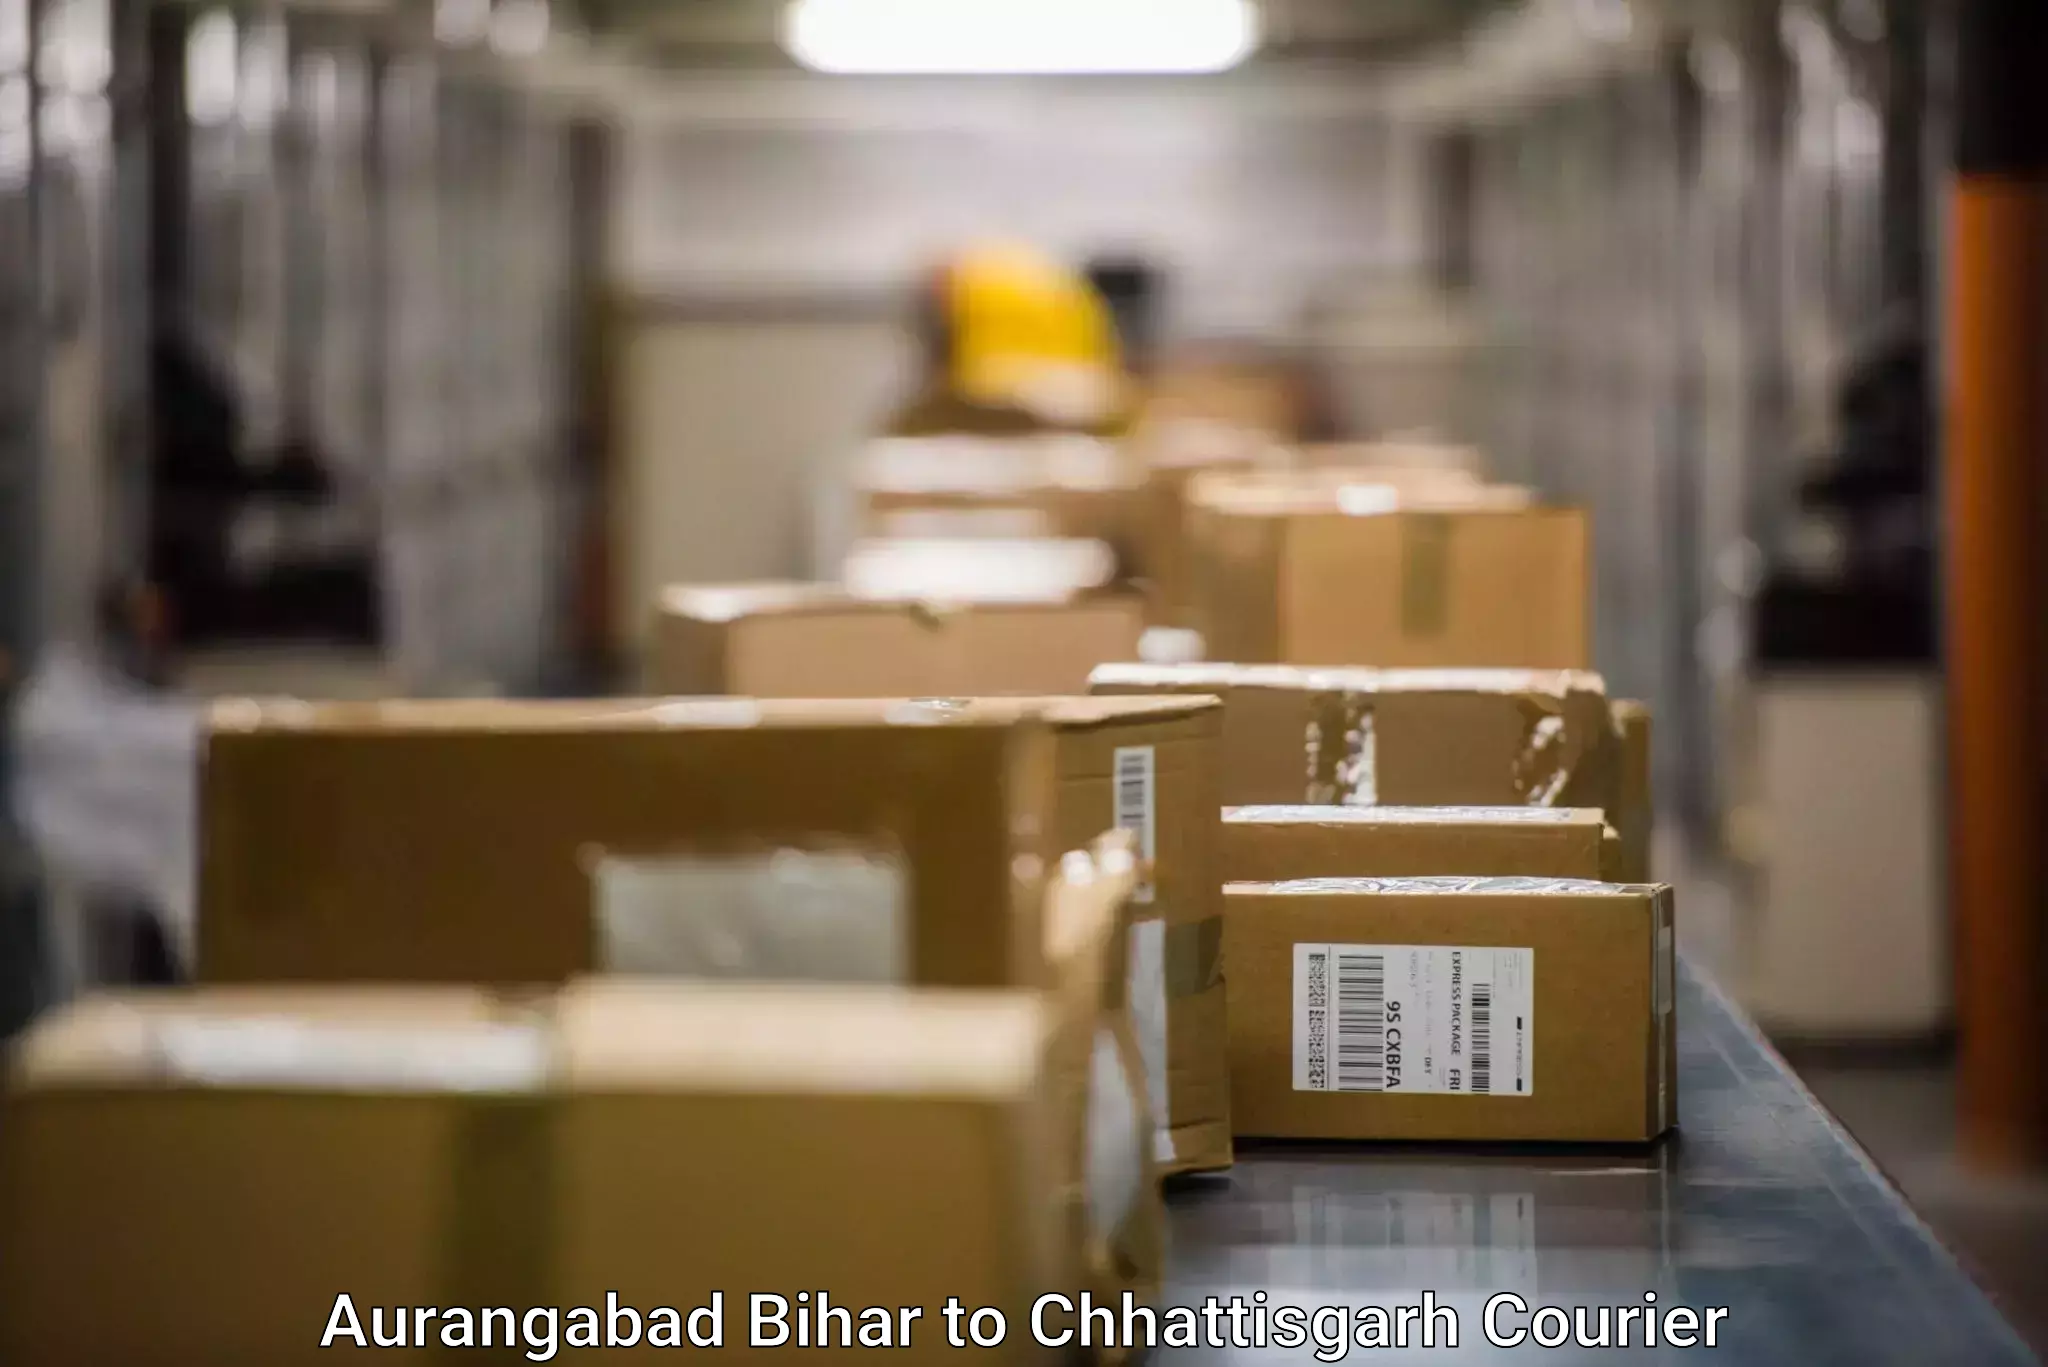 Rapid shipping services Aurangabad Bihar to Amakhokhara